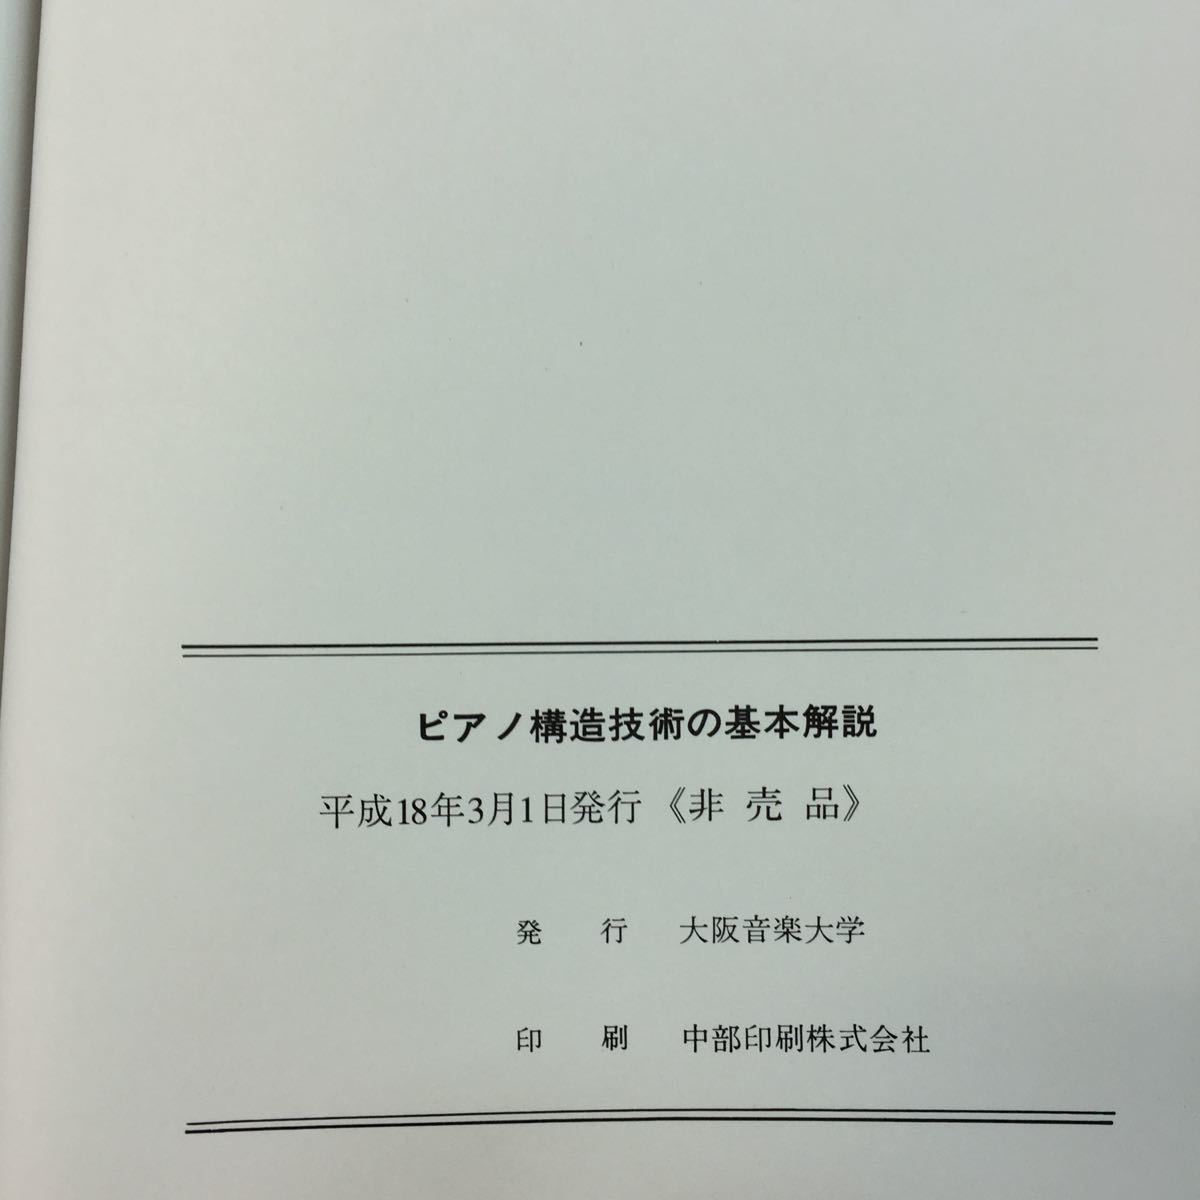 f-526 *0 фортепьяно структура технология. основы описание Osaka музыка университет 